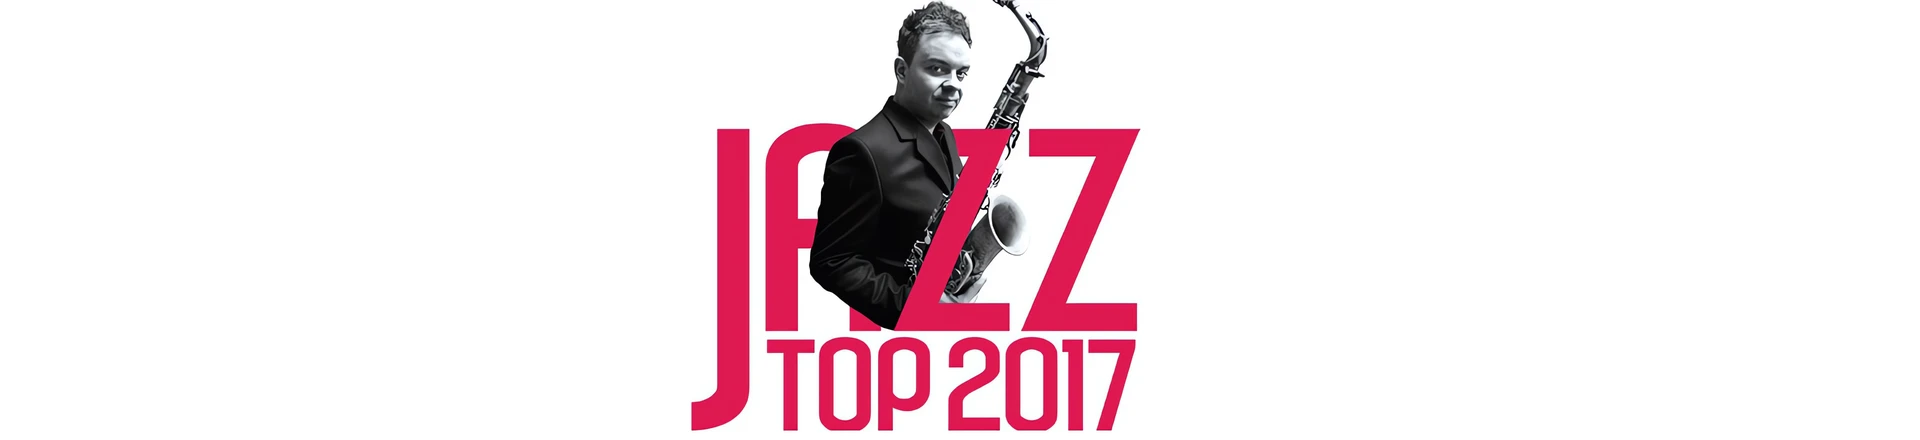 Perkusyjne wyniki Jazz TOP 2017 